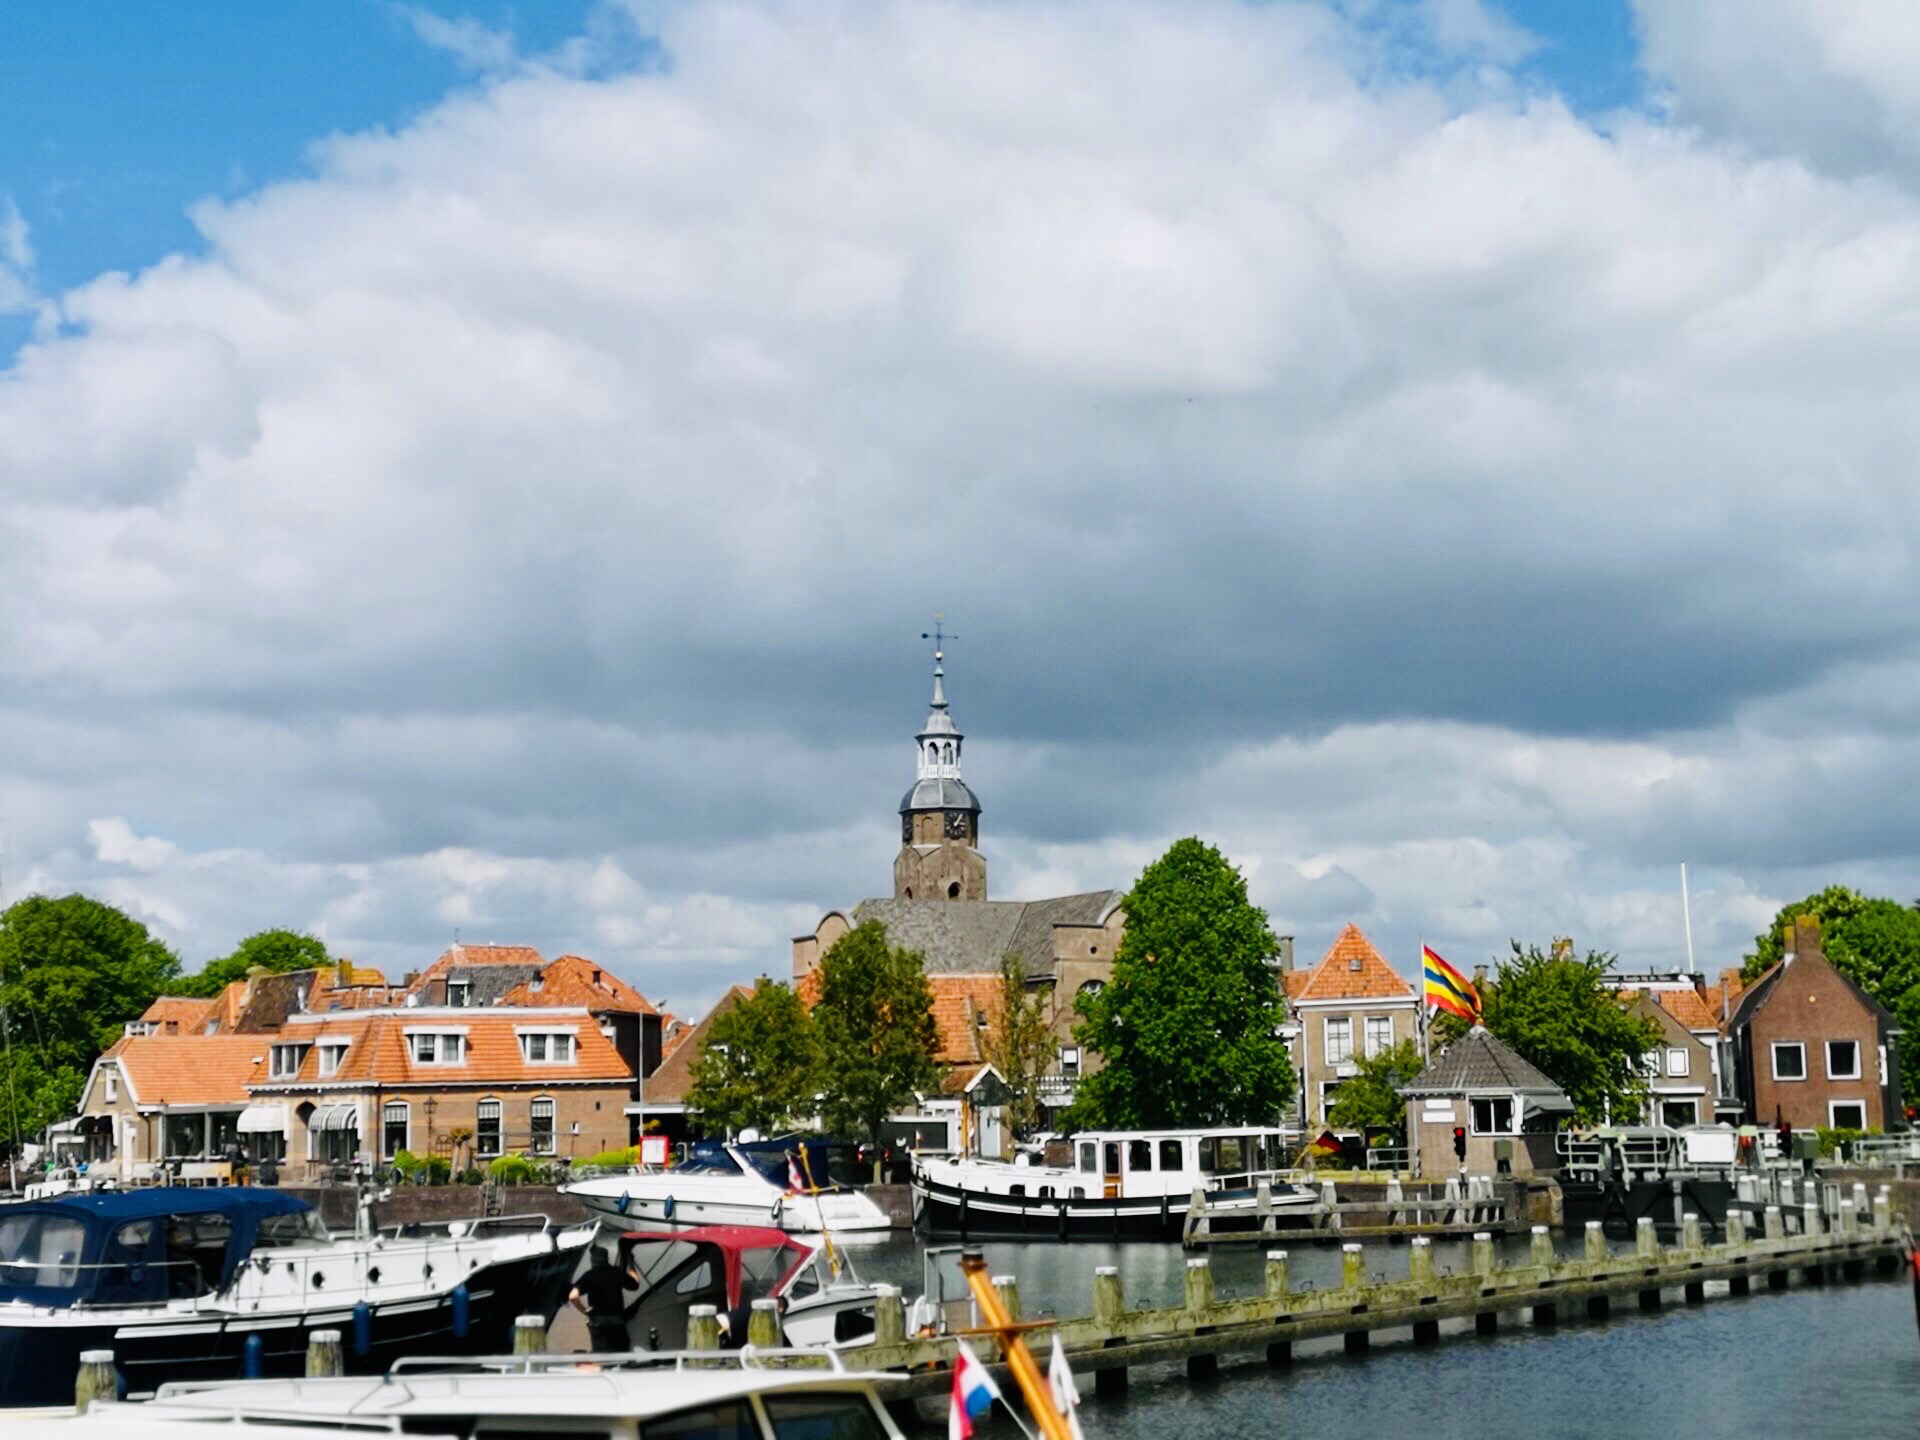 荷兰小镇布洛克宰尔还保持着17世纪的模样，鲜活的小城生活气息甚于羊角村。清澈见底的河涌、各种帆船游艇